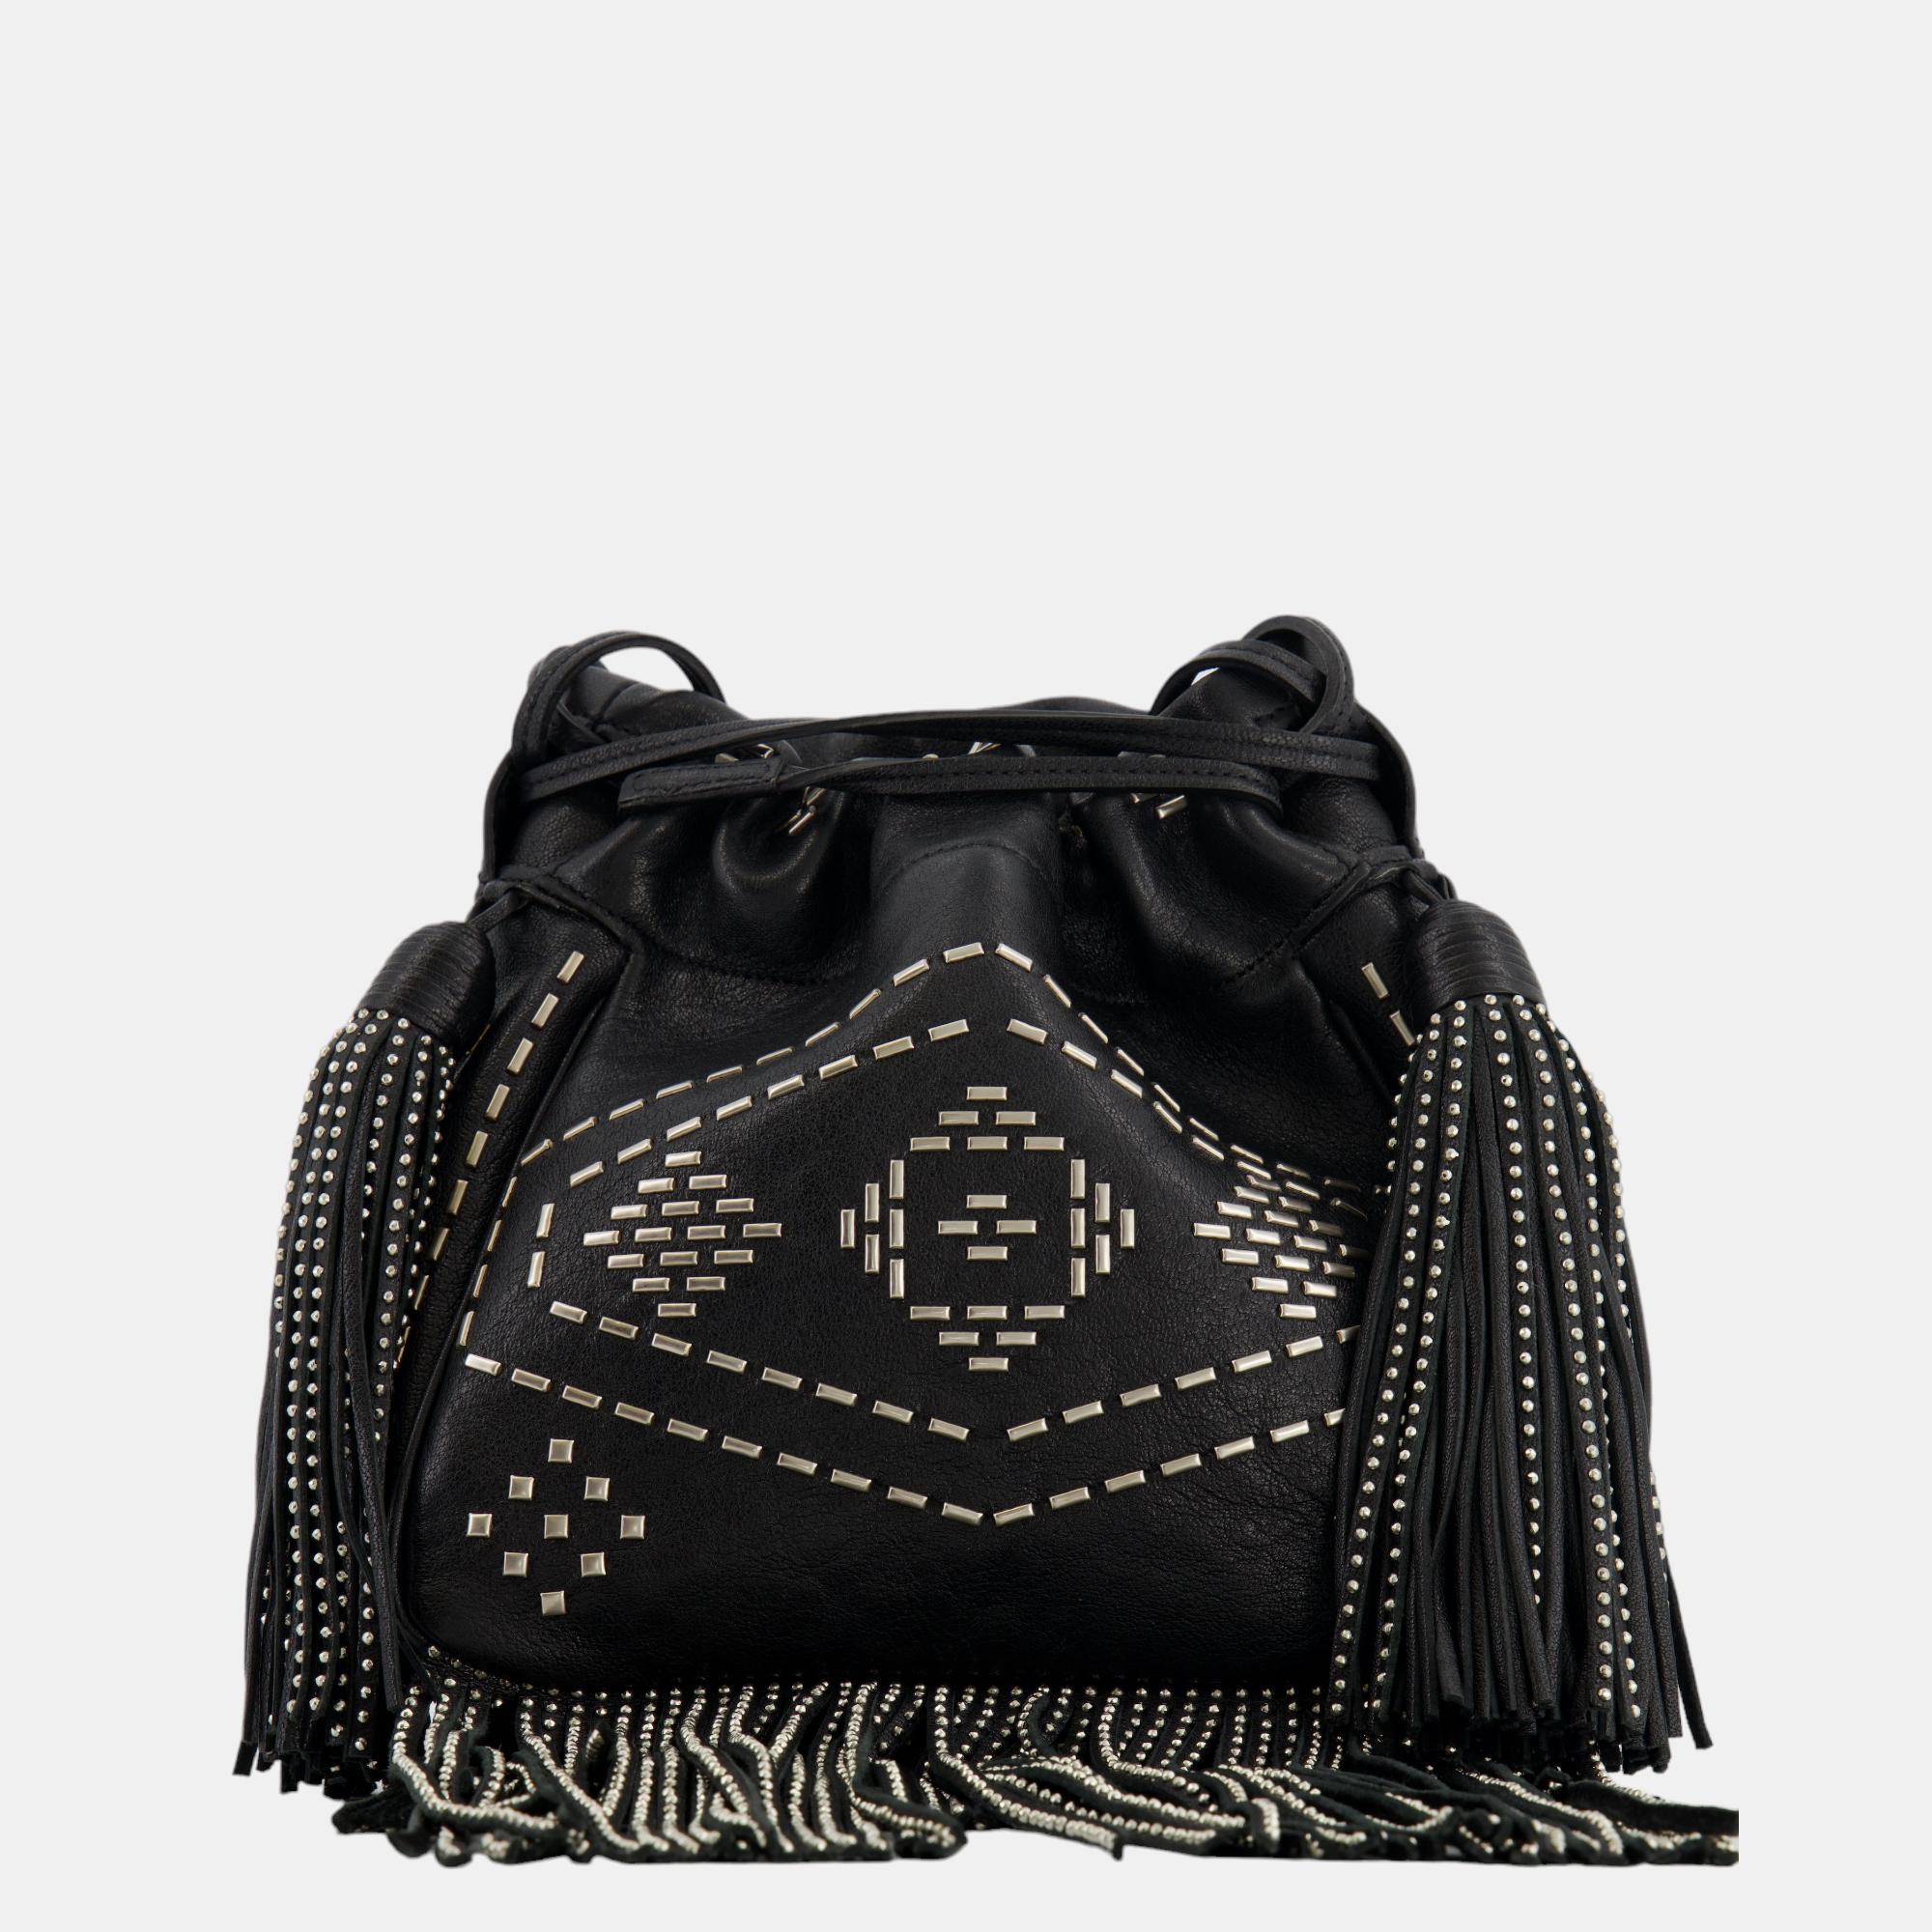 Saint laurent paris saint laurent black studded bag with fringe details